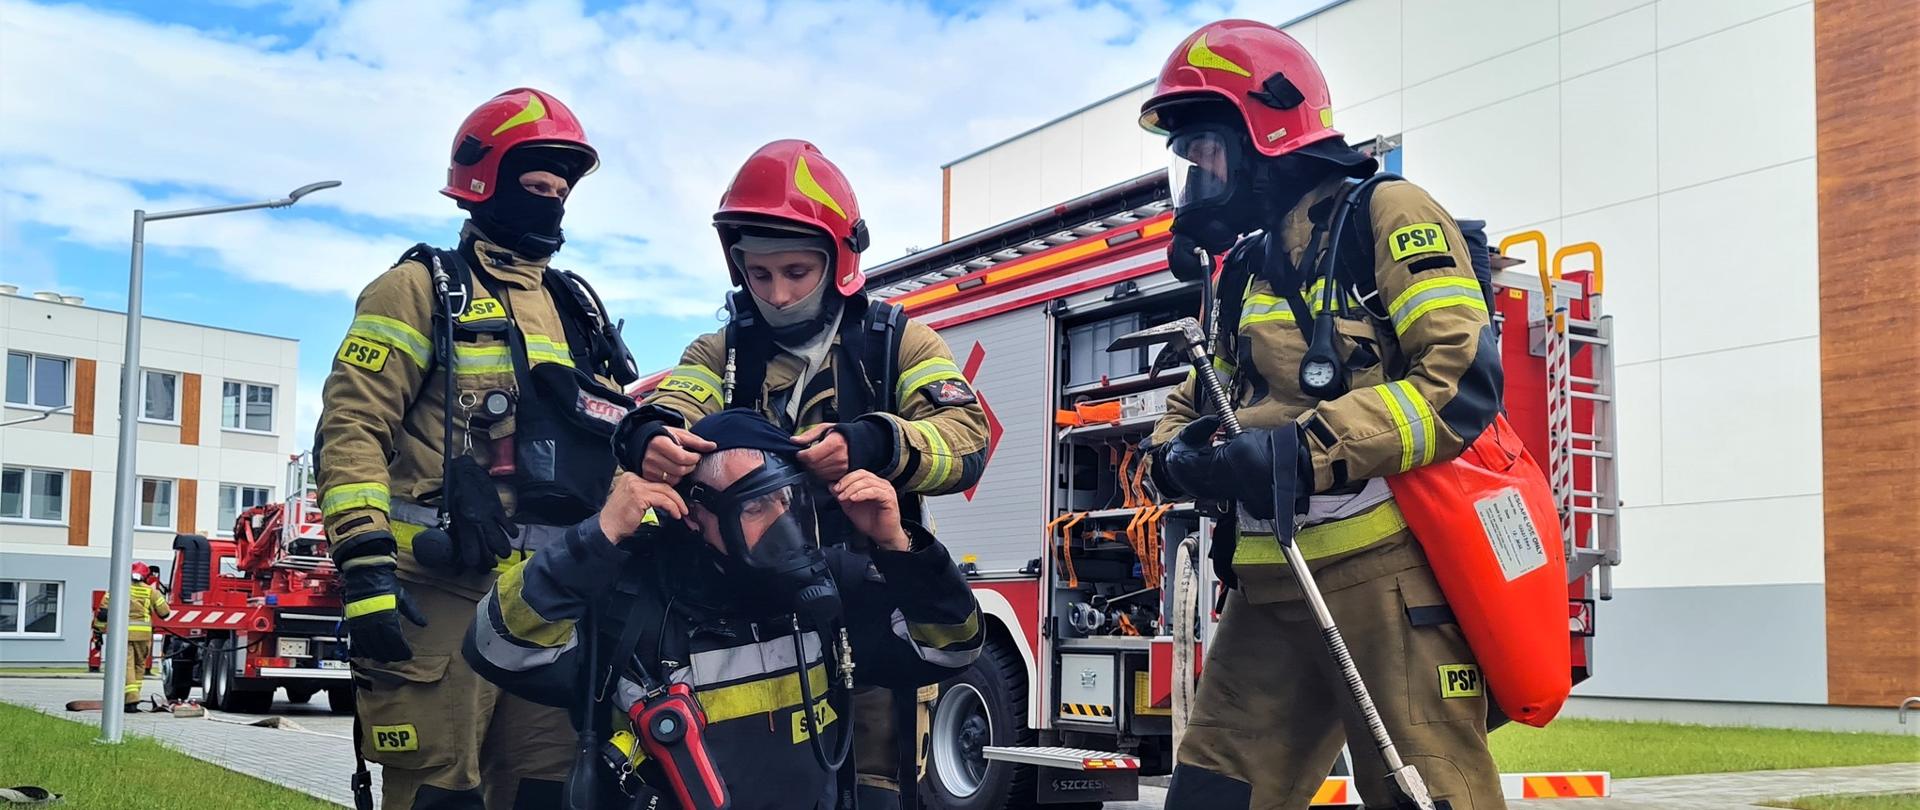 Zdjęcie przestawia strażaków podczas ćwiczeń. Strażacy ubrani są w stroje bojowe, na głowach mają czerwone hełmy. Na zdjęciu widoczne są również pojazdy pożanicze. Ćwiczenia odbywają się na obiekcie Szpitala Matki Bożej Nieustającej Pomocy w Wołominie